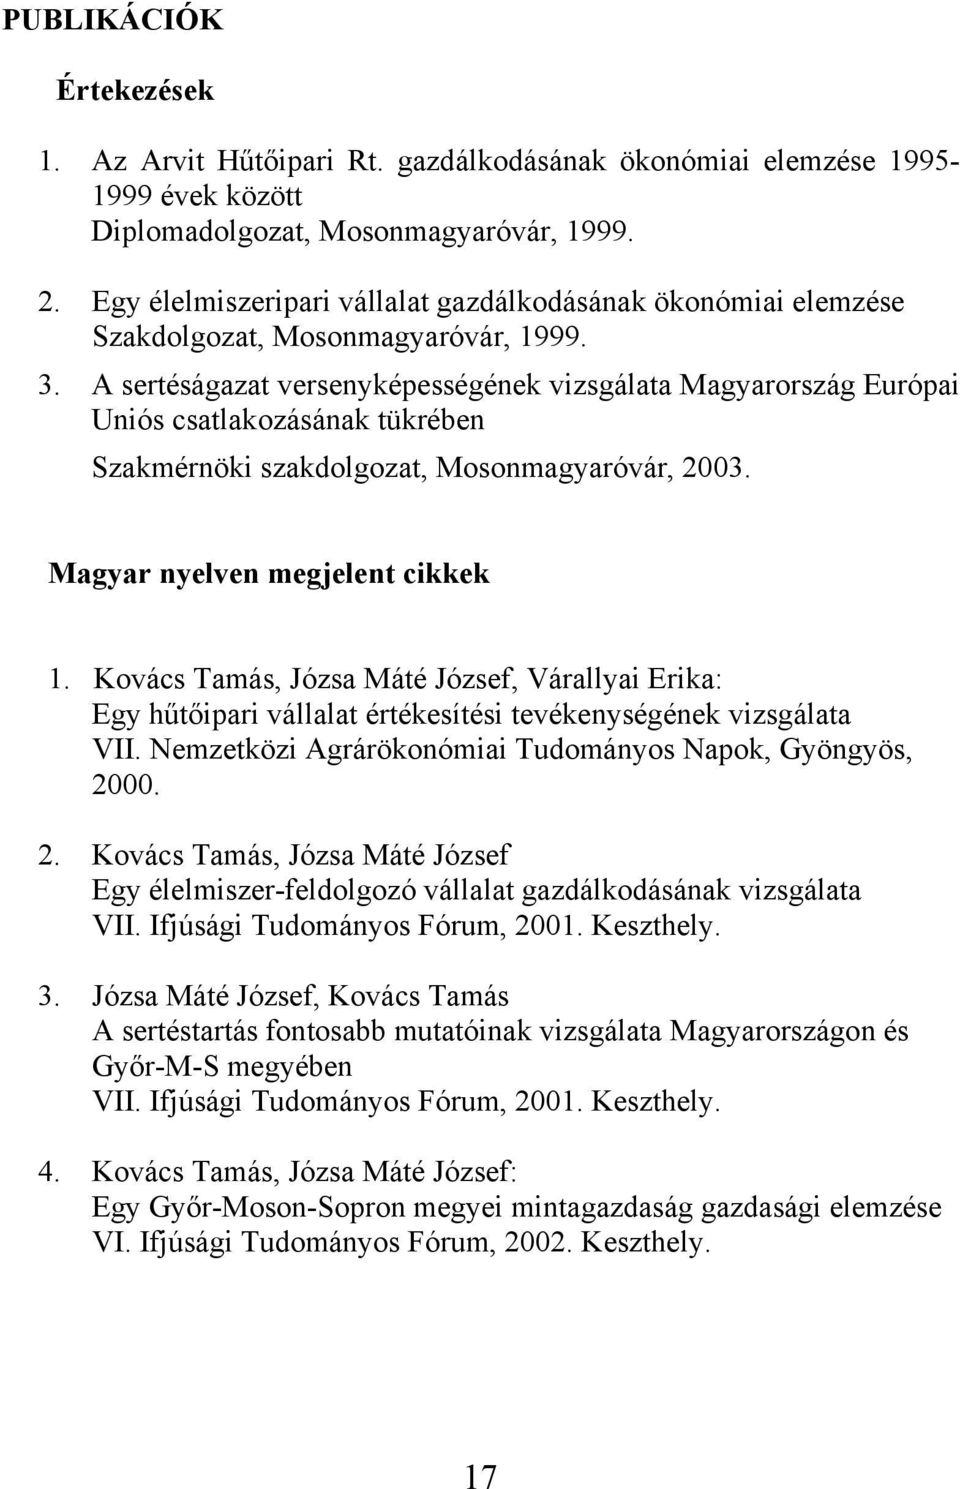 A sertéságazat versenyképességének vizsgálata Magyarország Európai Uniós csatlakozásának tükrében Szakmérnöki szakdolgozat, Mosonmagyaróvár, 2003. Magyar nyelven megjelent cikkek 1.